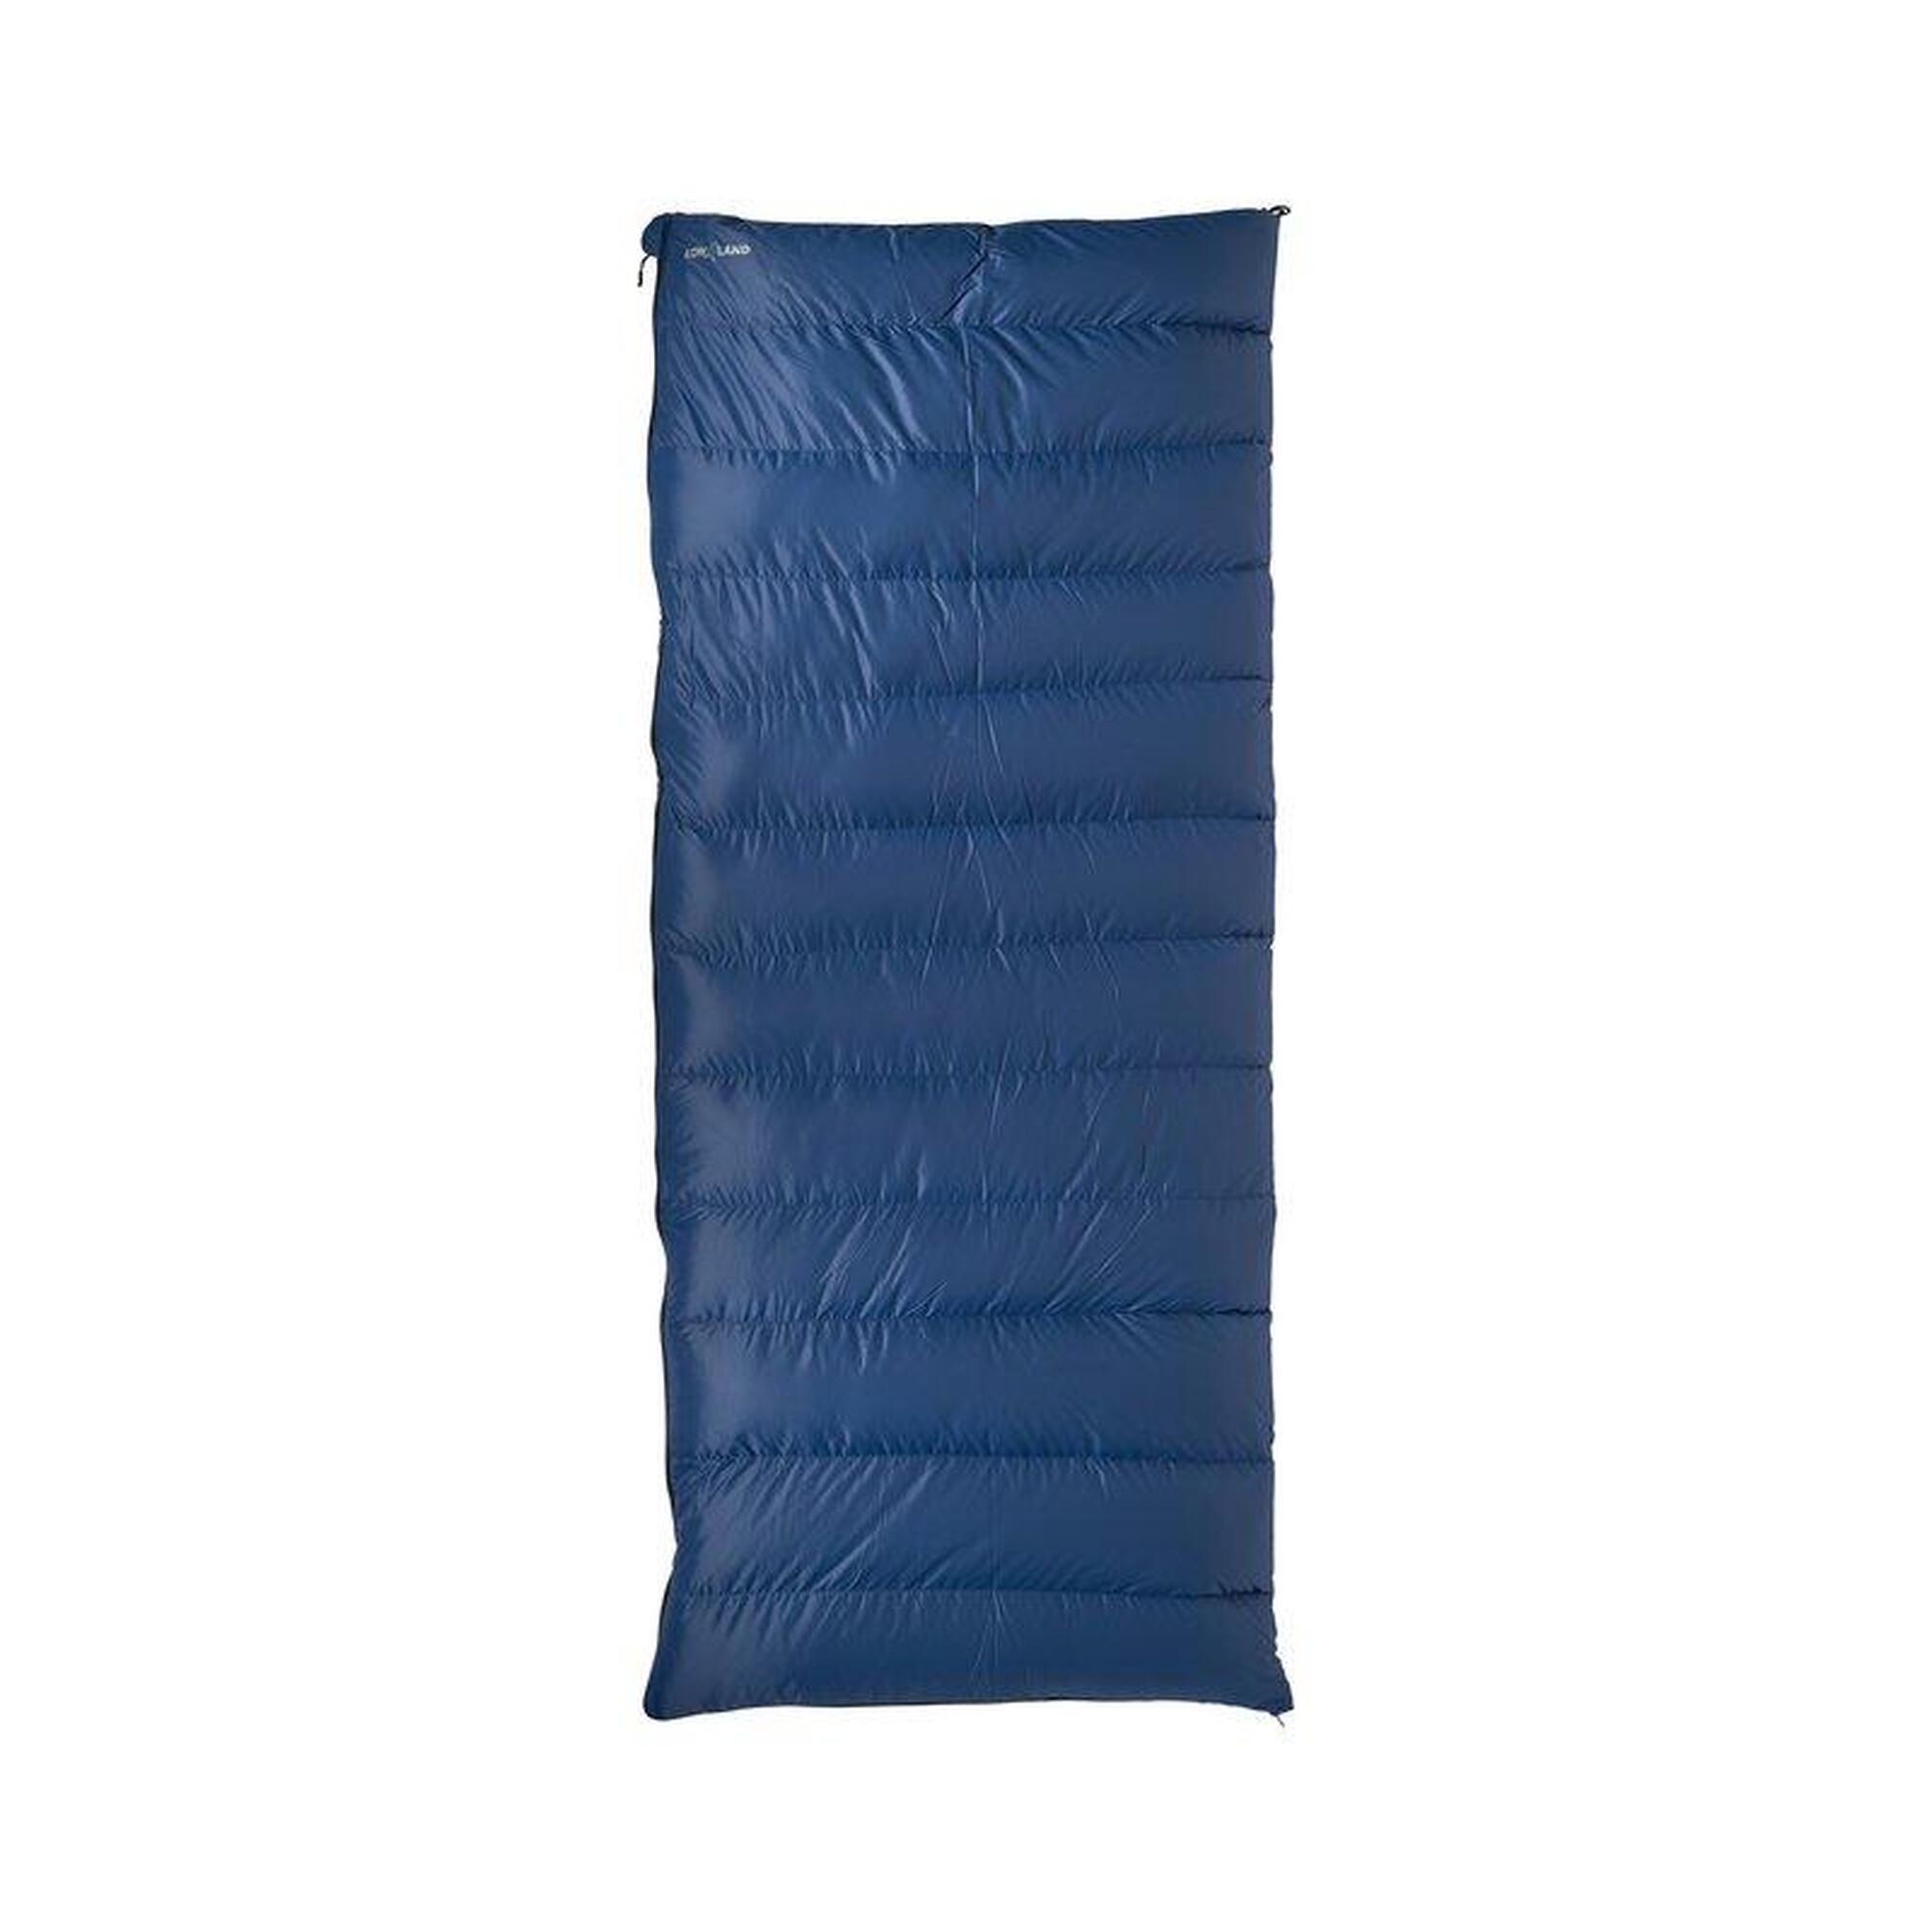 Saco de dormir Companion NC1 manta de plumón-Nylon/algodón-200x80 cm-1595gr-0°C